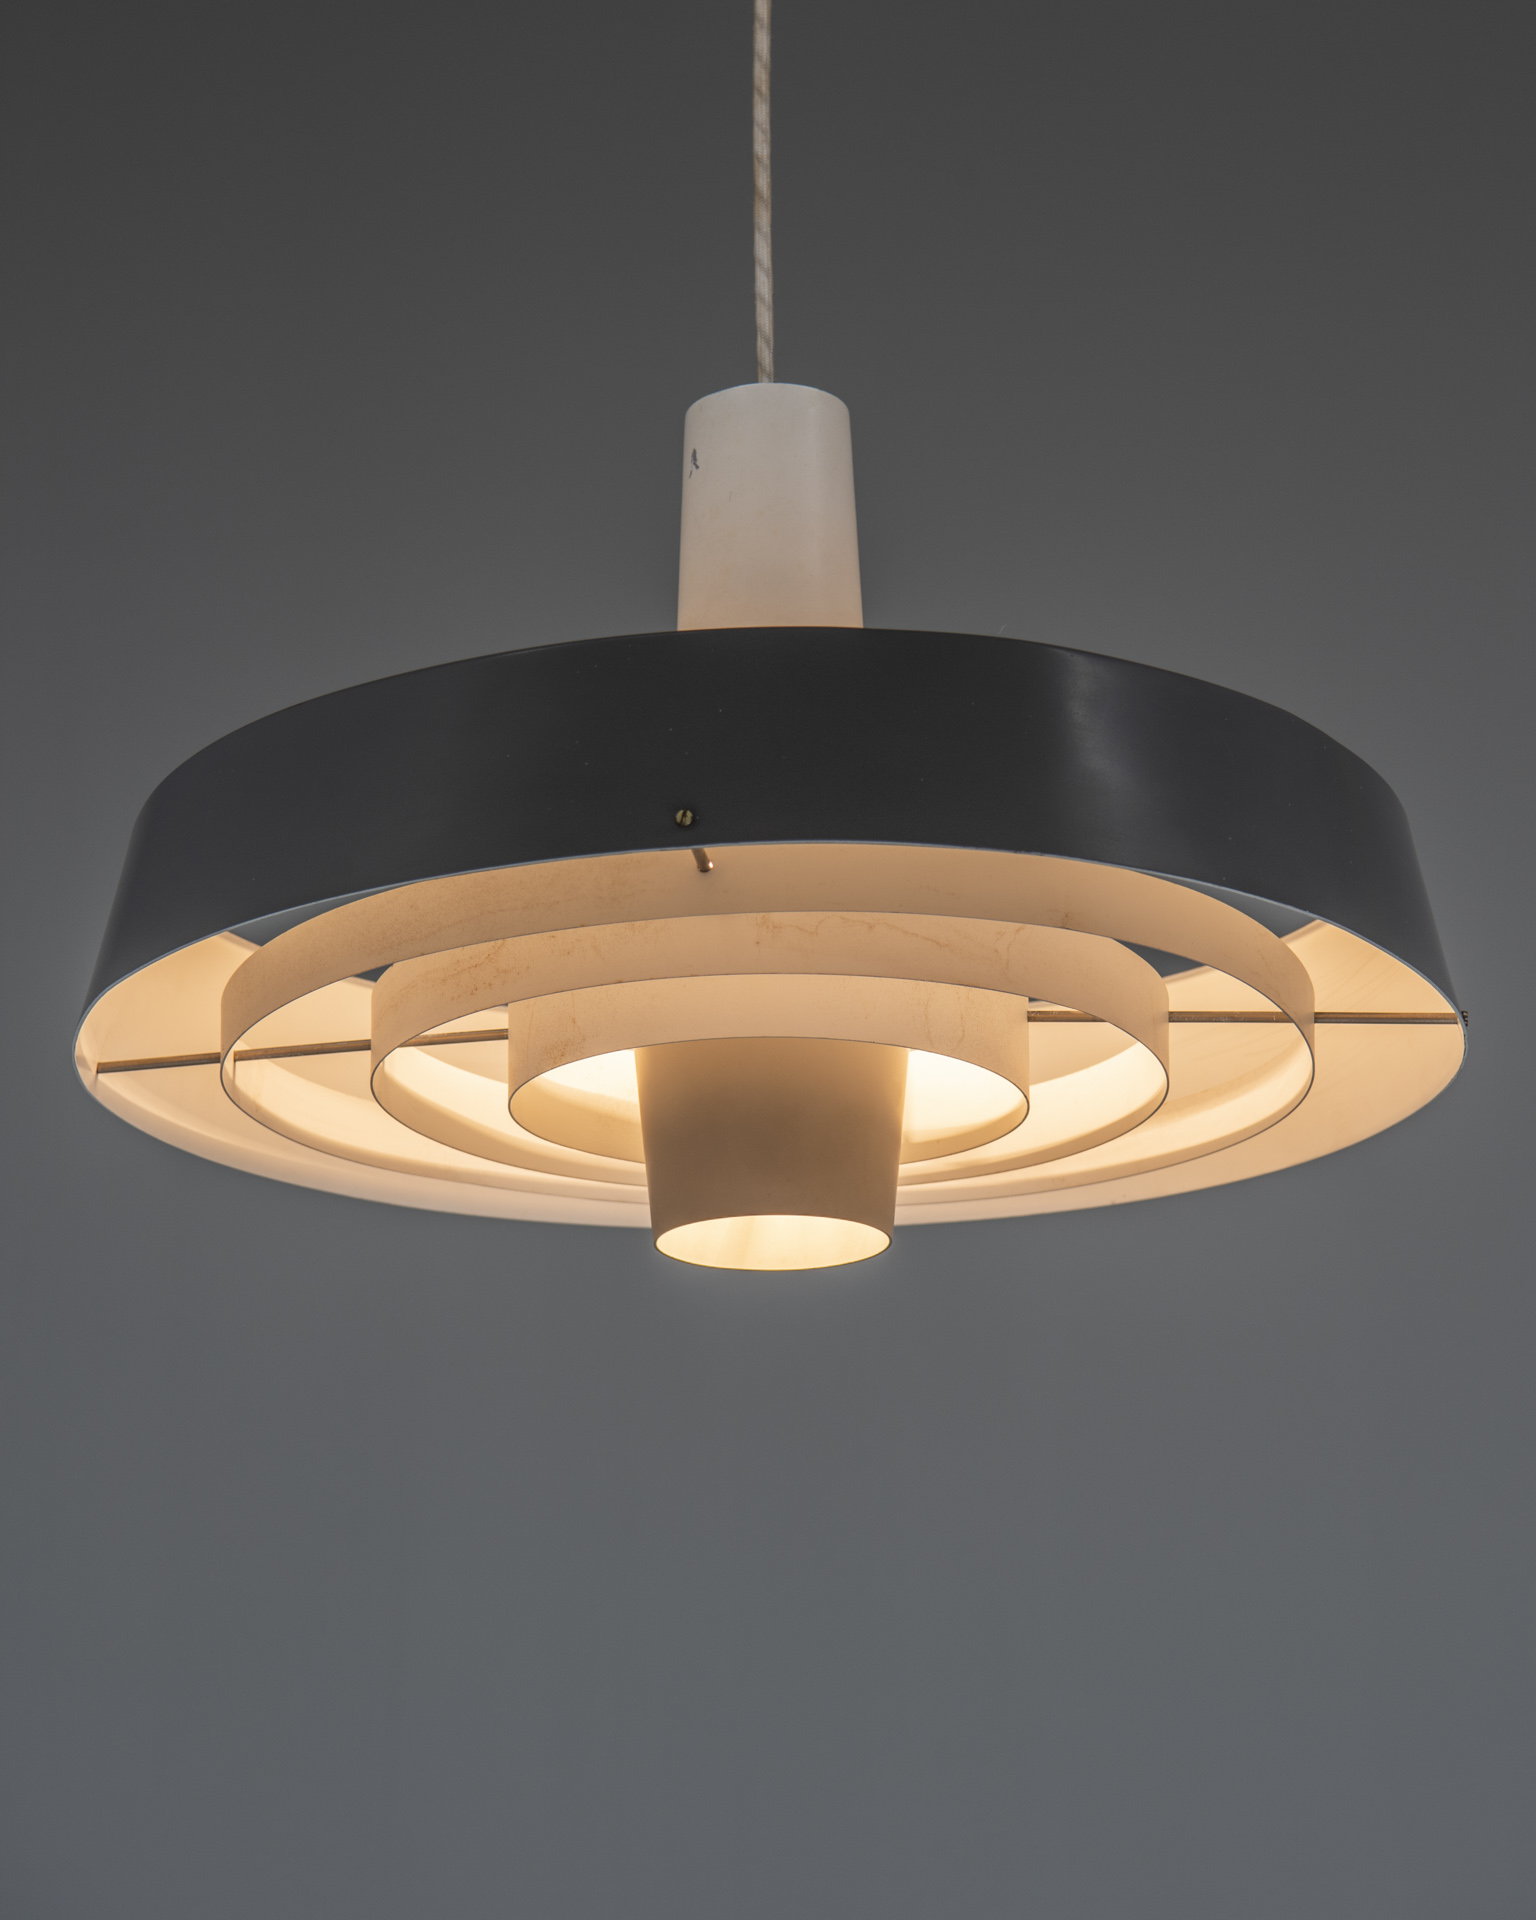 2496louis-poulsen-bornholm-ceiling-lamp-2